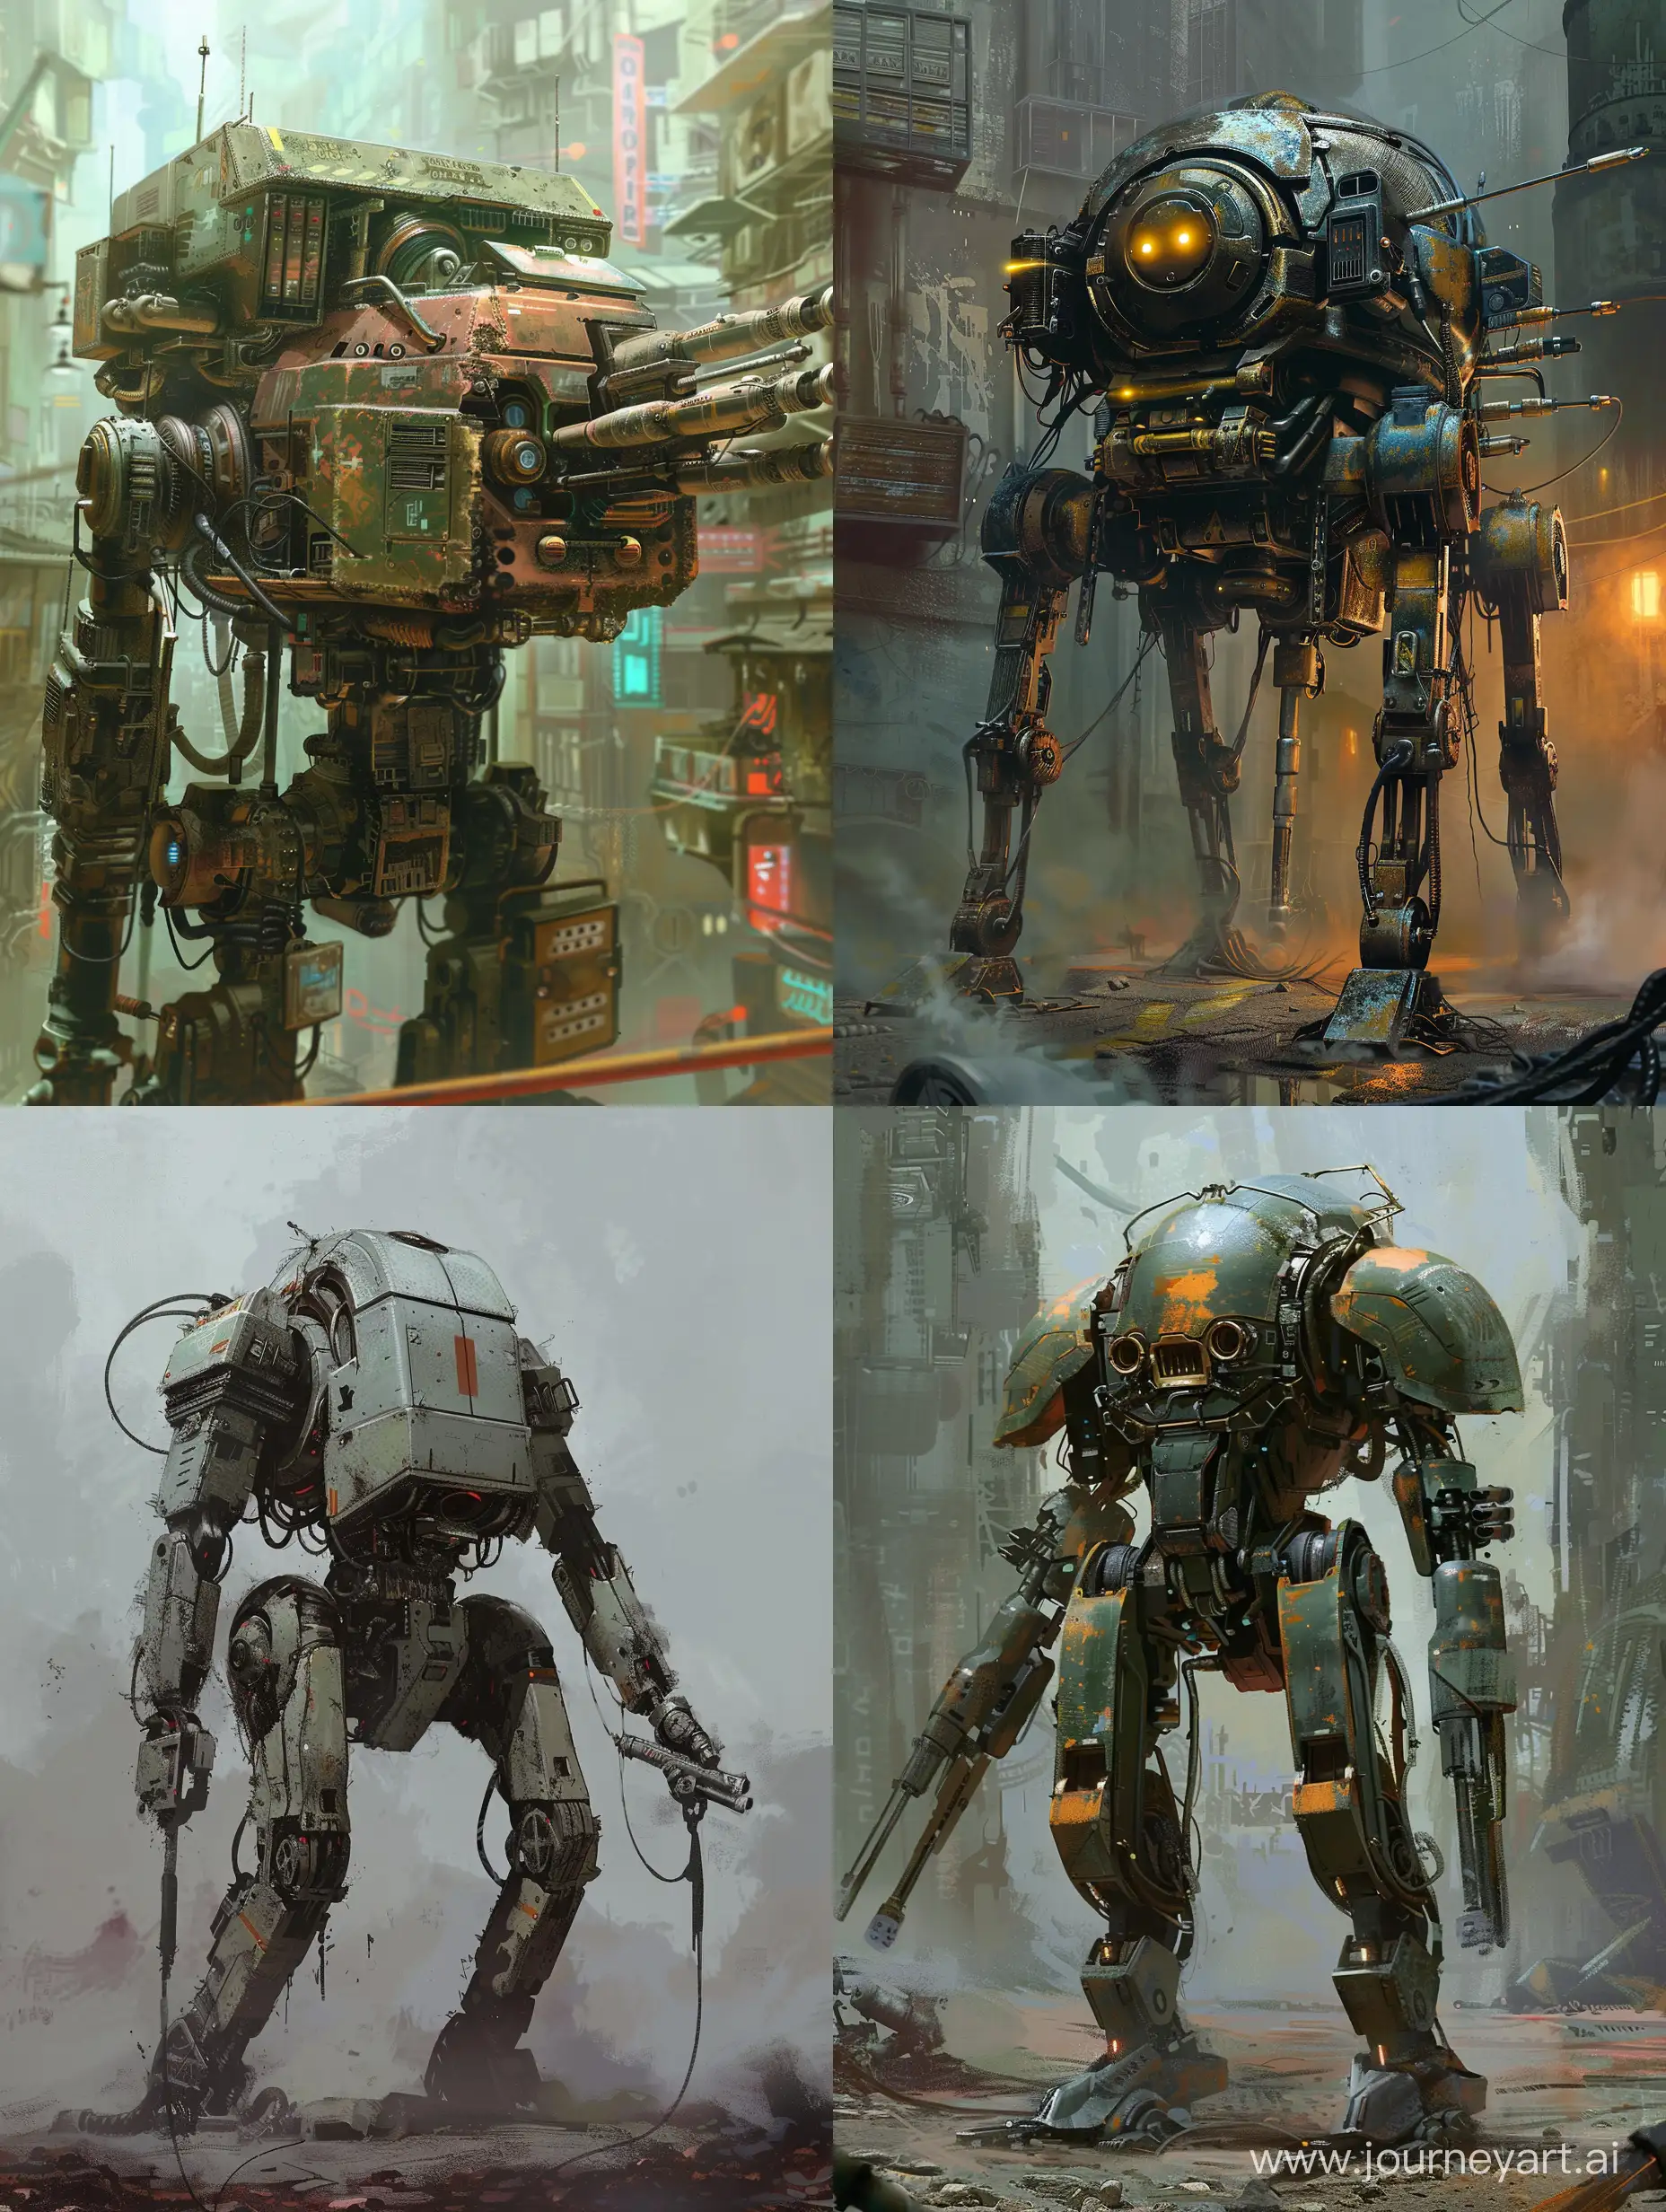 Futuristic-Cyberpunk-Combat-Machinery-in-Urban-Dystopia